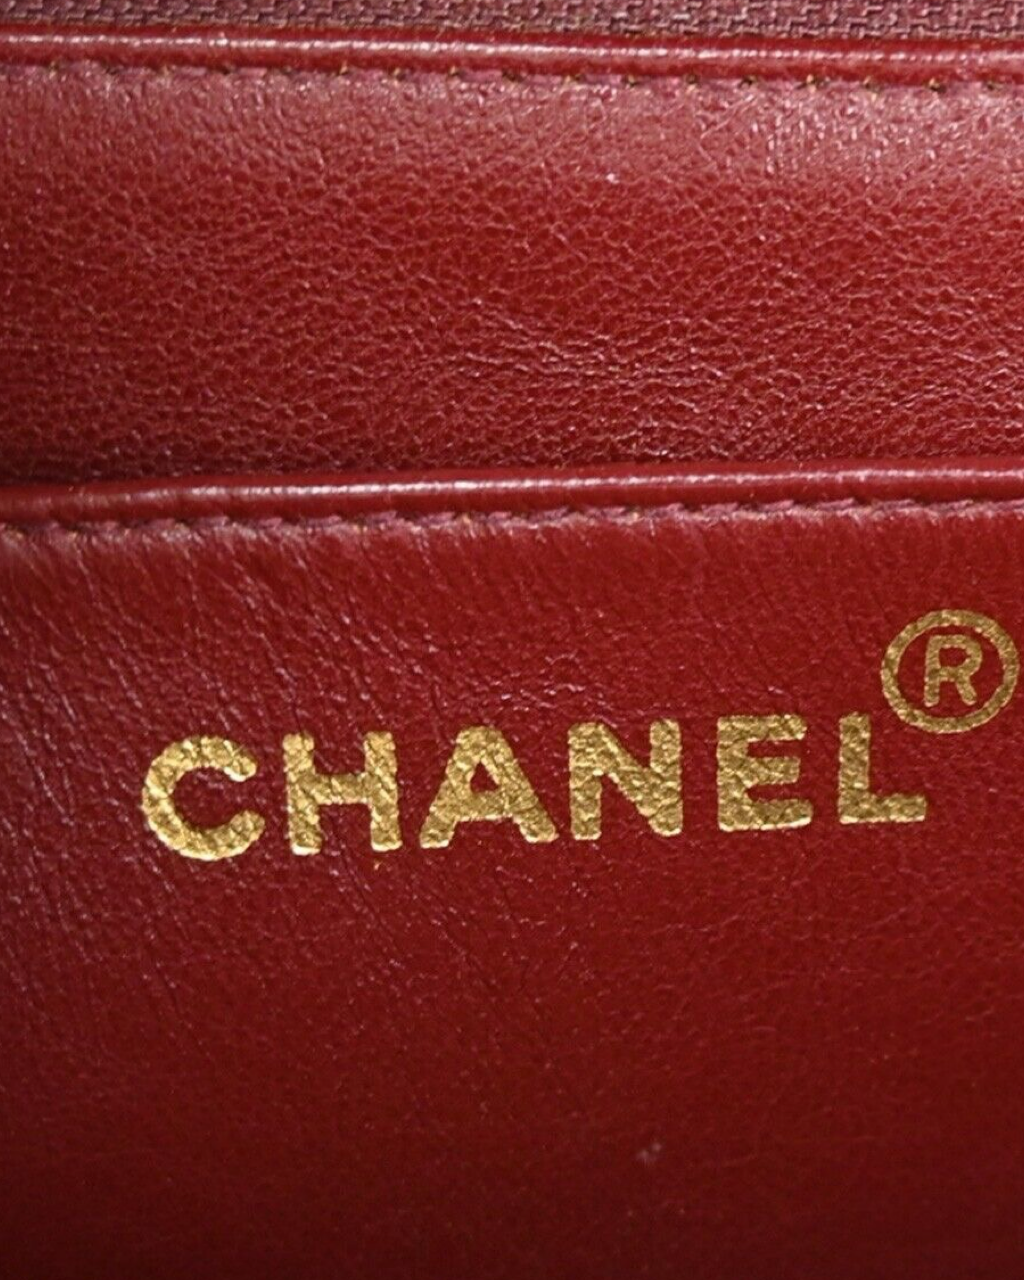 Bolsa Chanel Diana